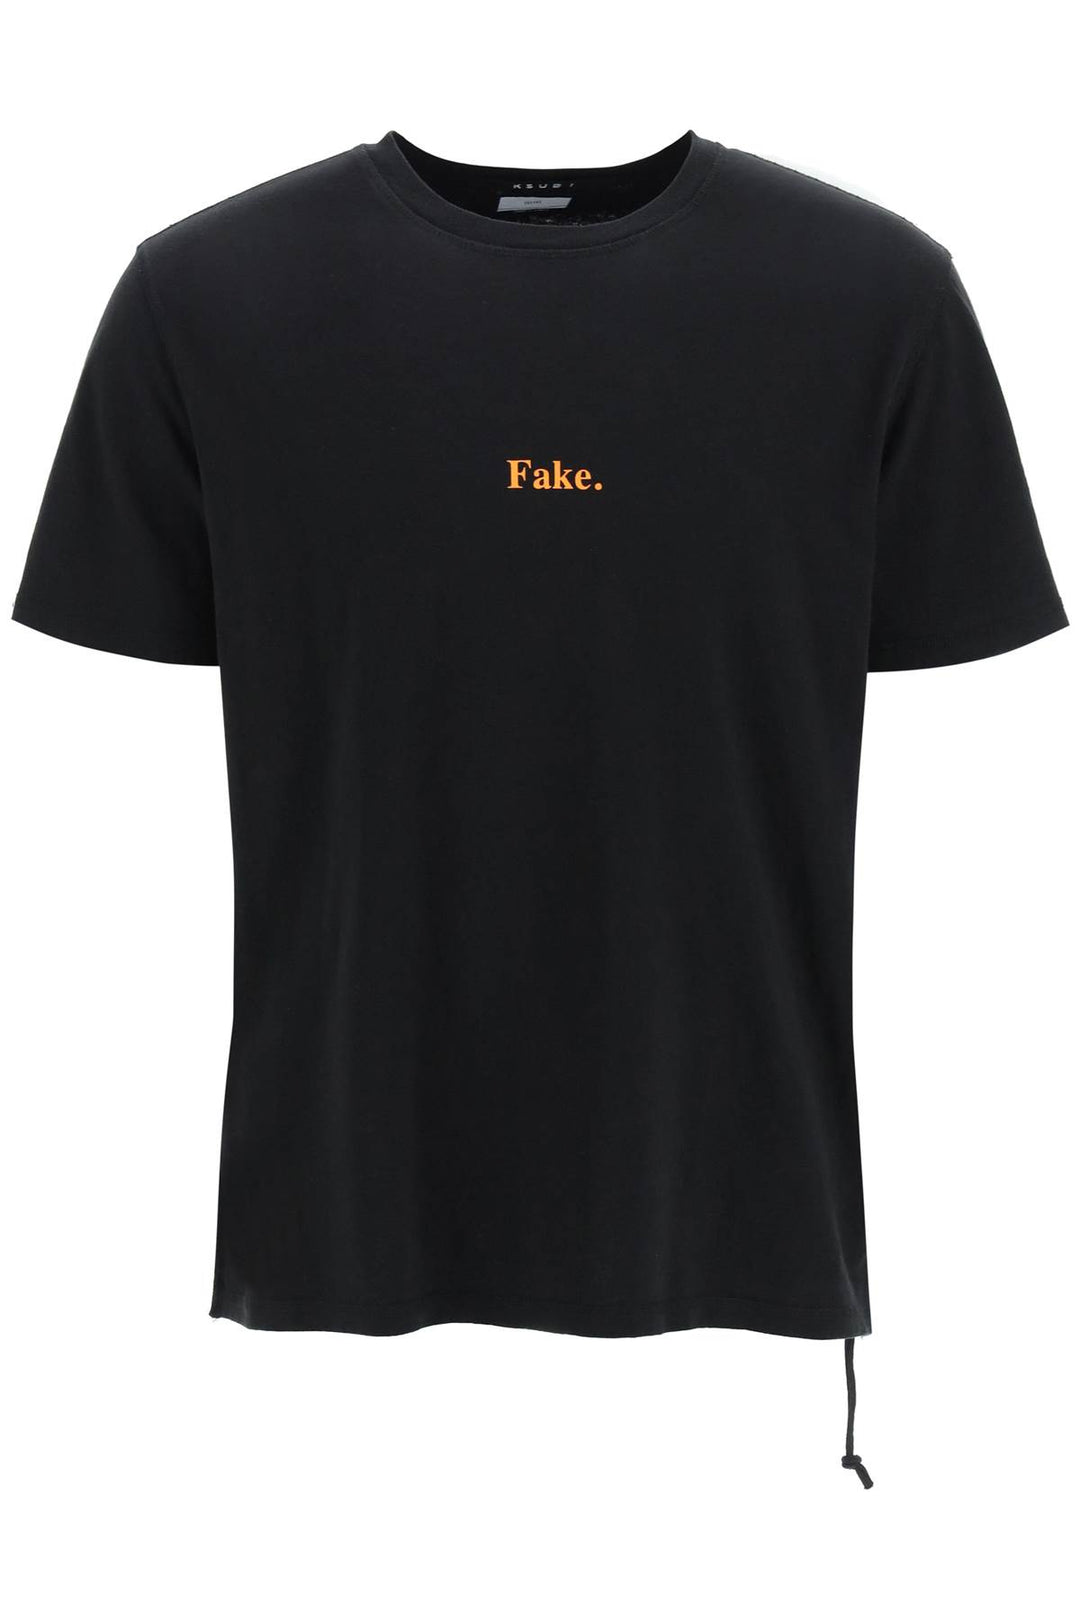 Ksubi 'fake' t-shirt-0